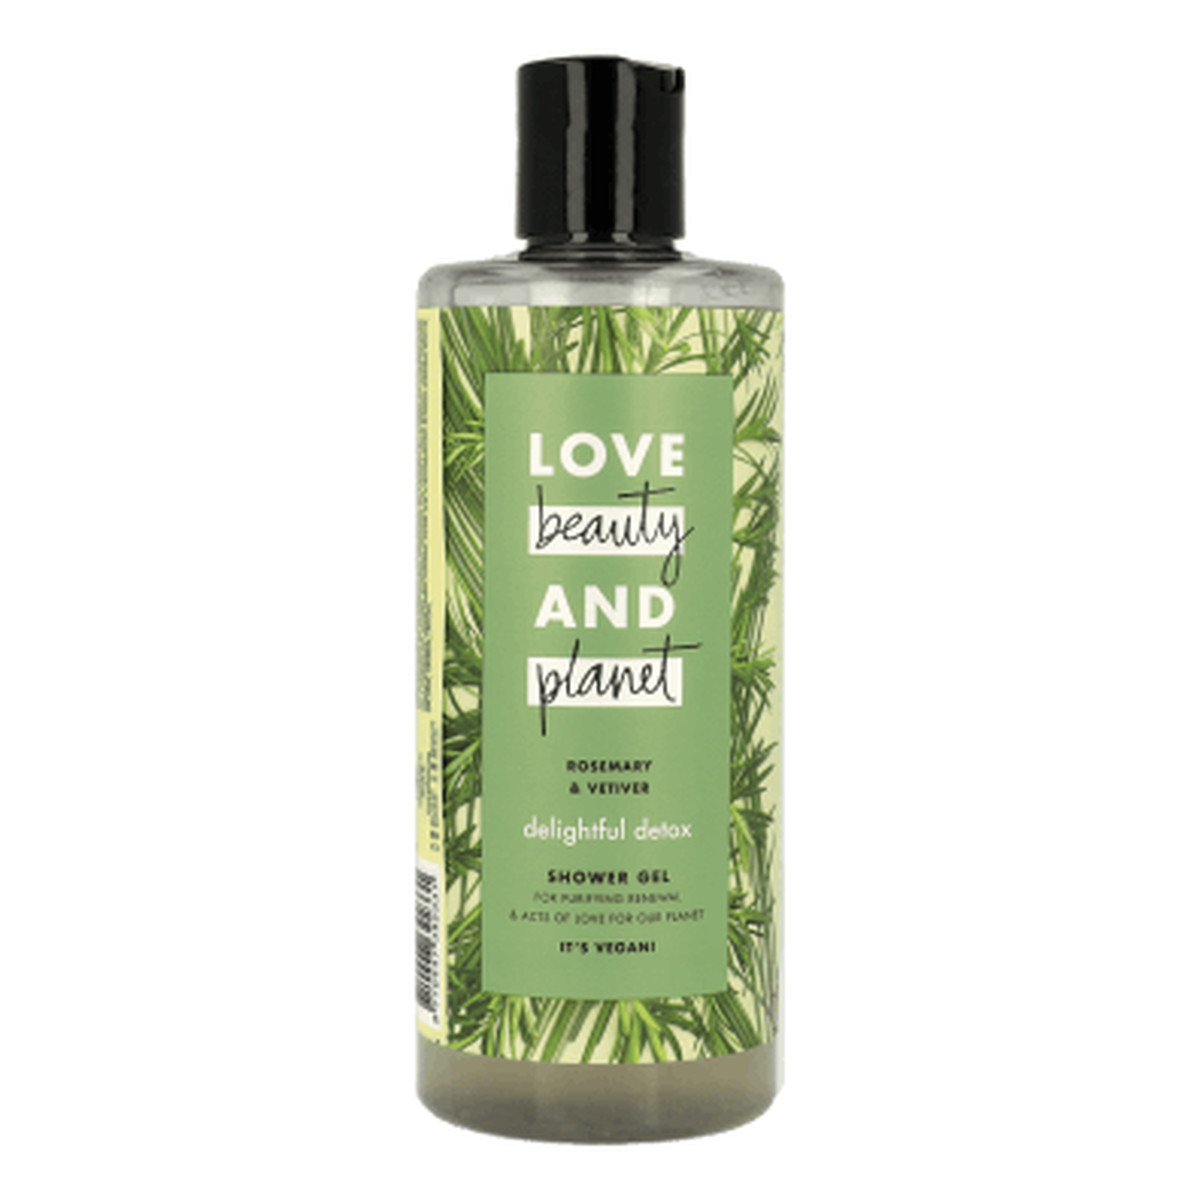 Love Beauty and Planet Rosemary & Vetiver Delightful Detox Shower Gel oczyszczający żel pod prysznic 400ml